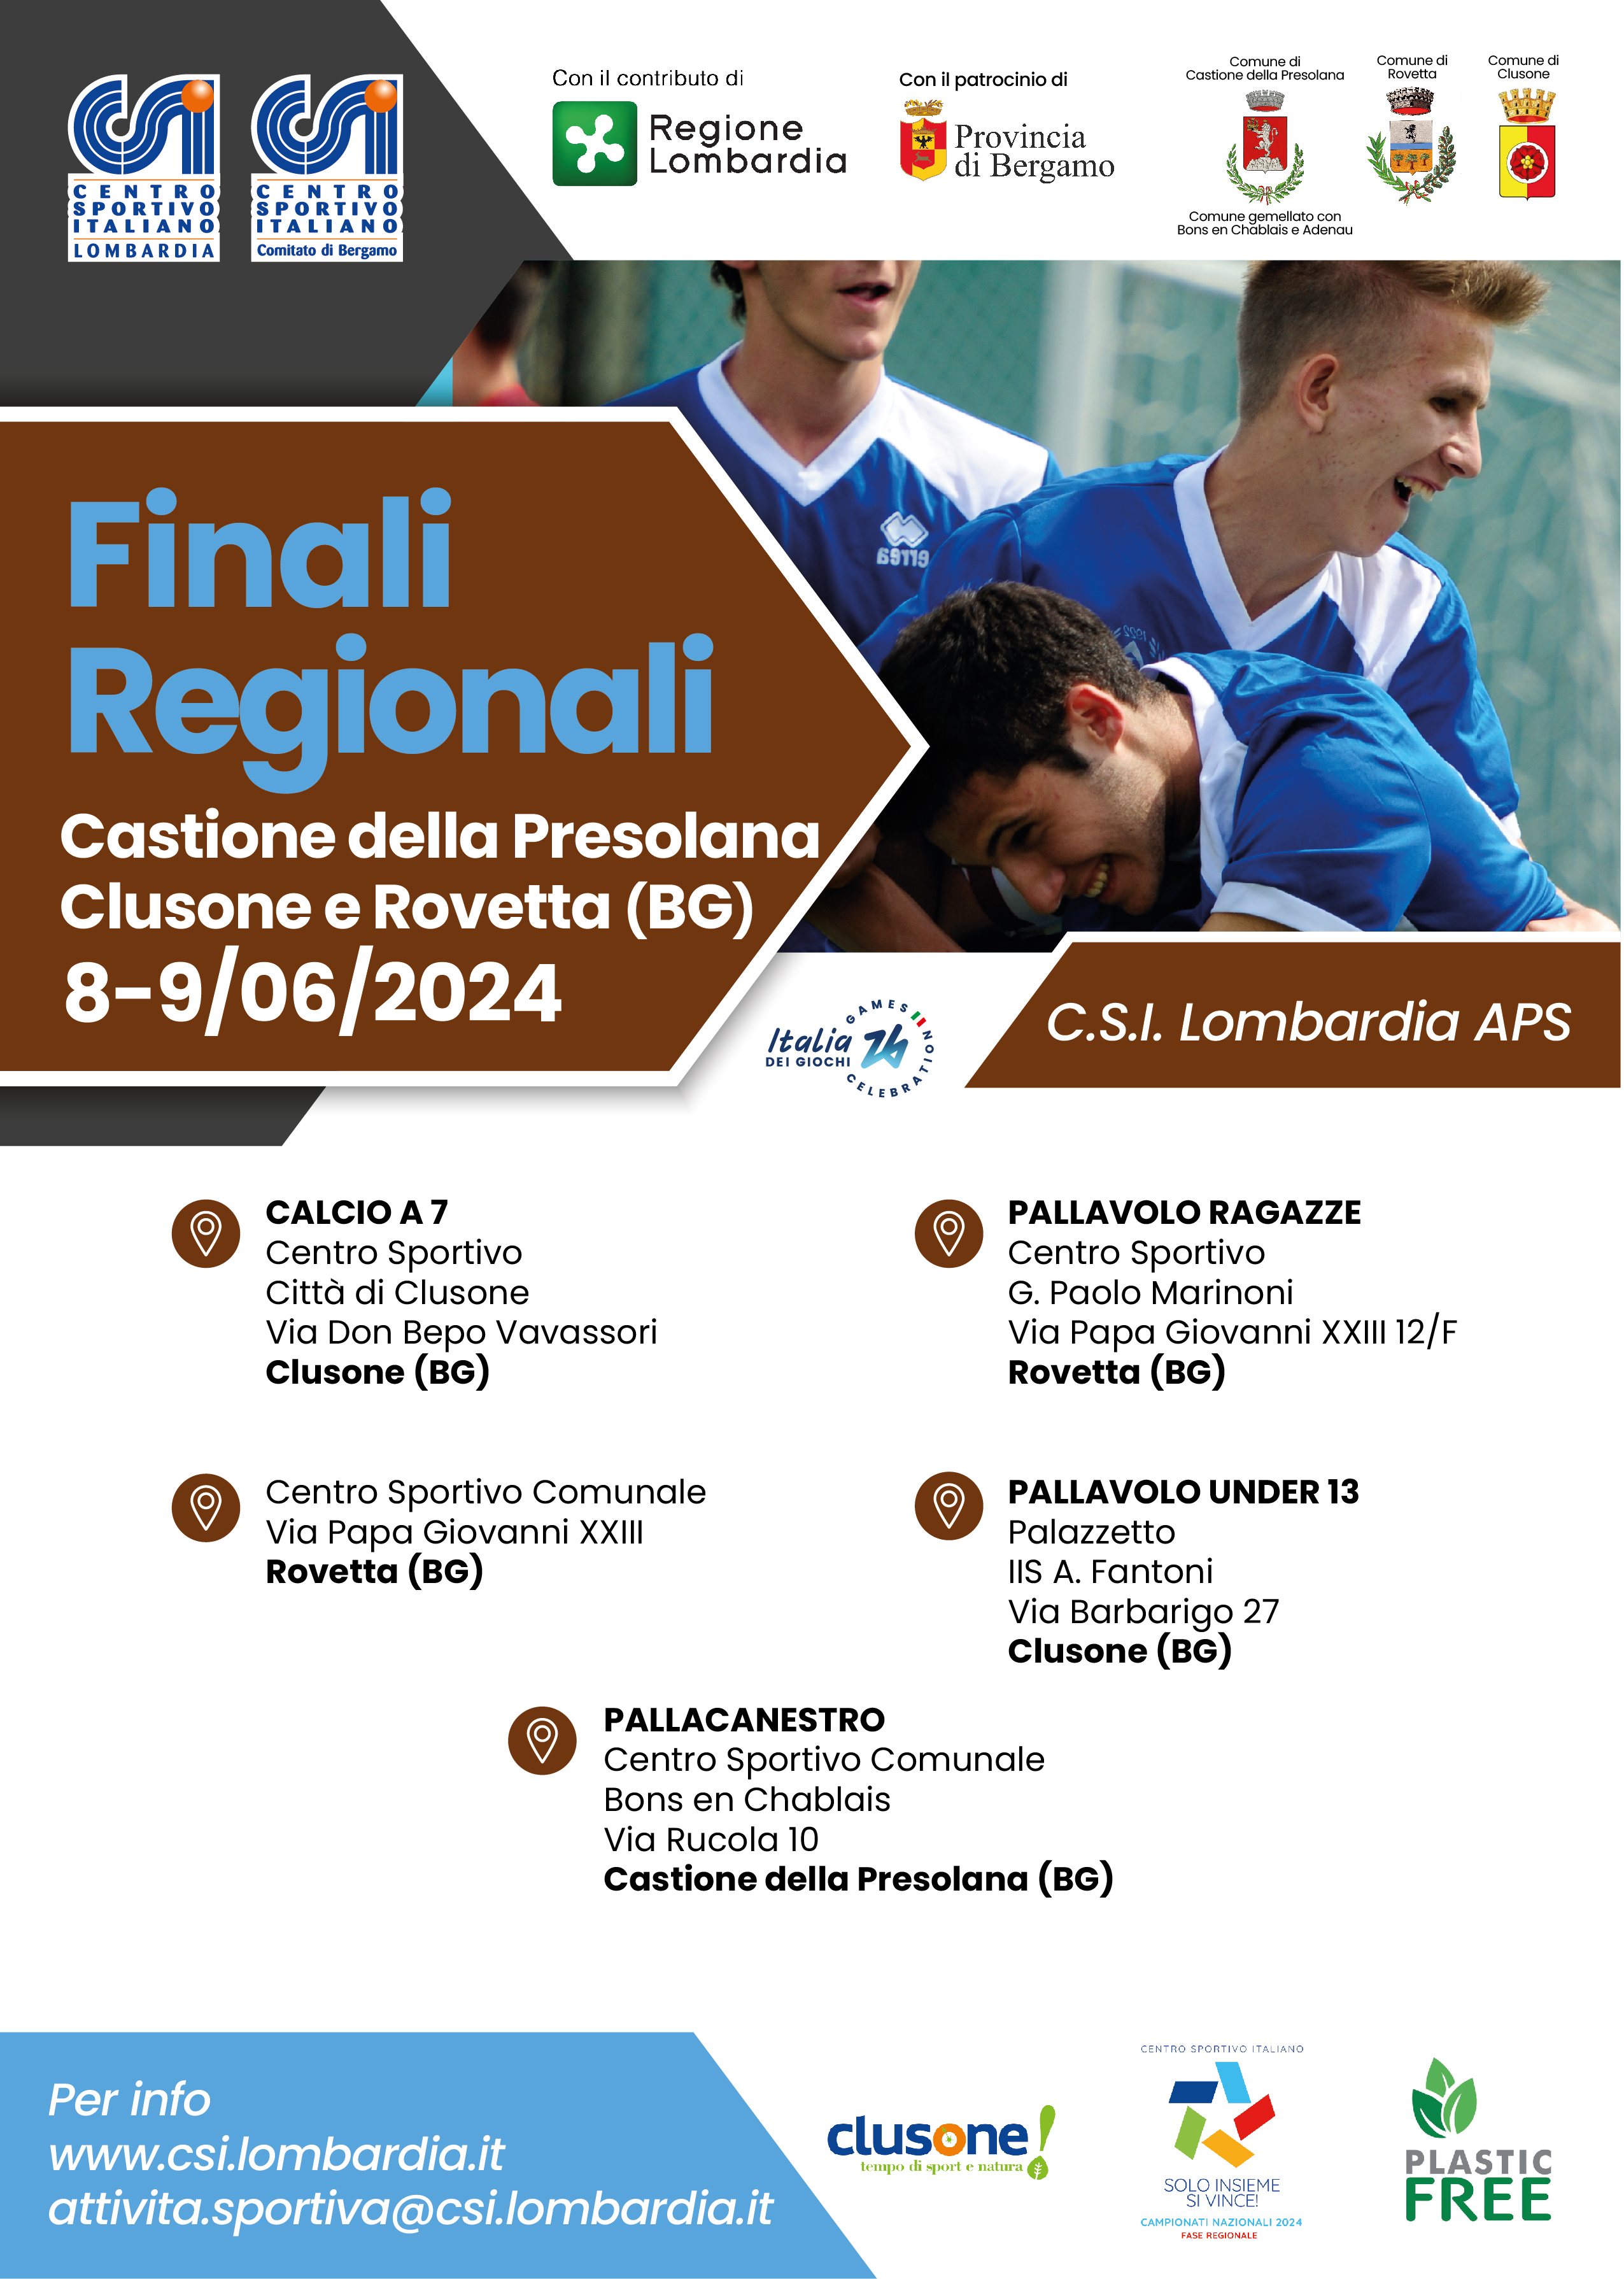 Finali Regionali Castione della Presolana Clusone e Rovetta (BG)